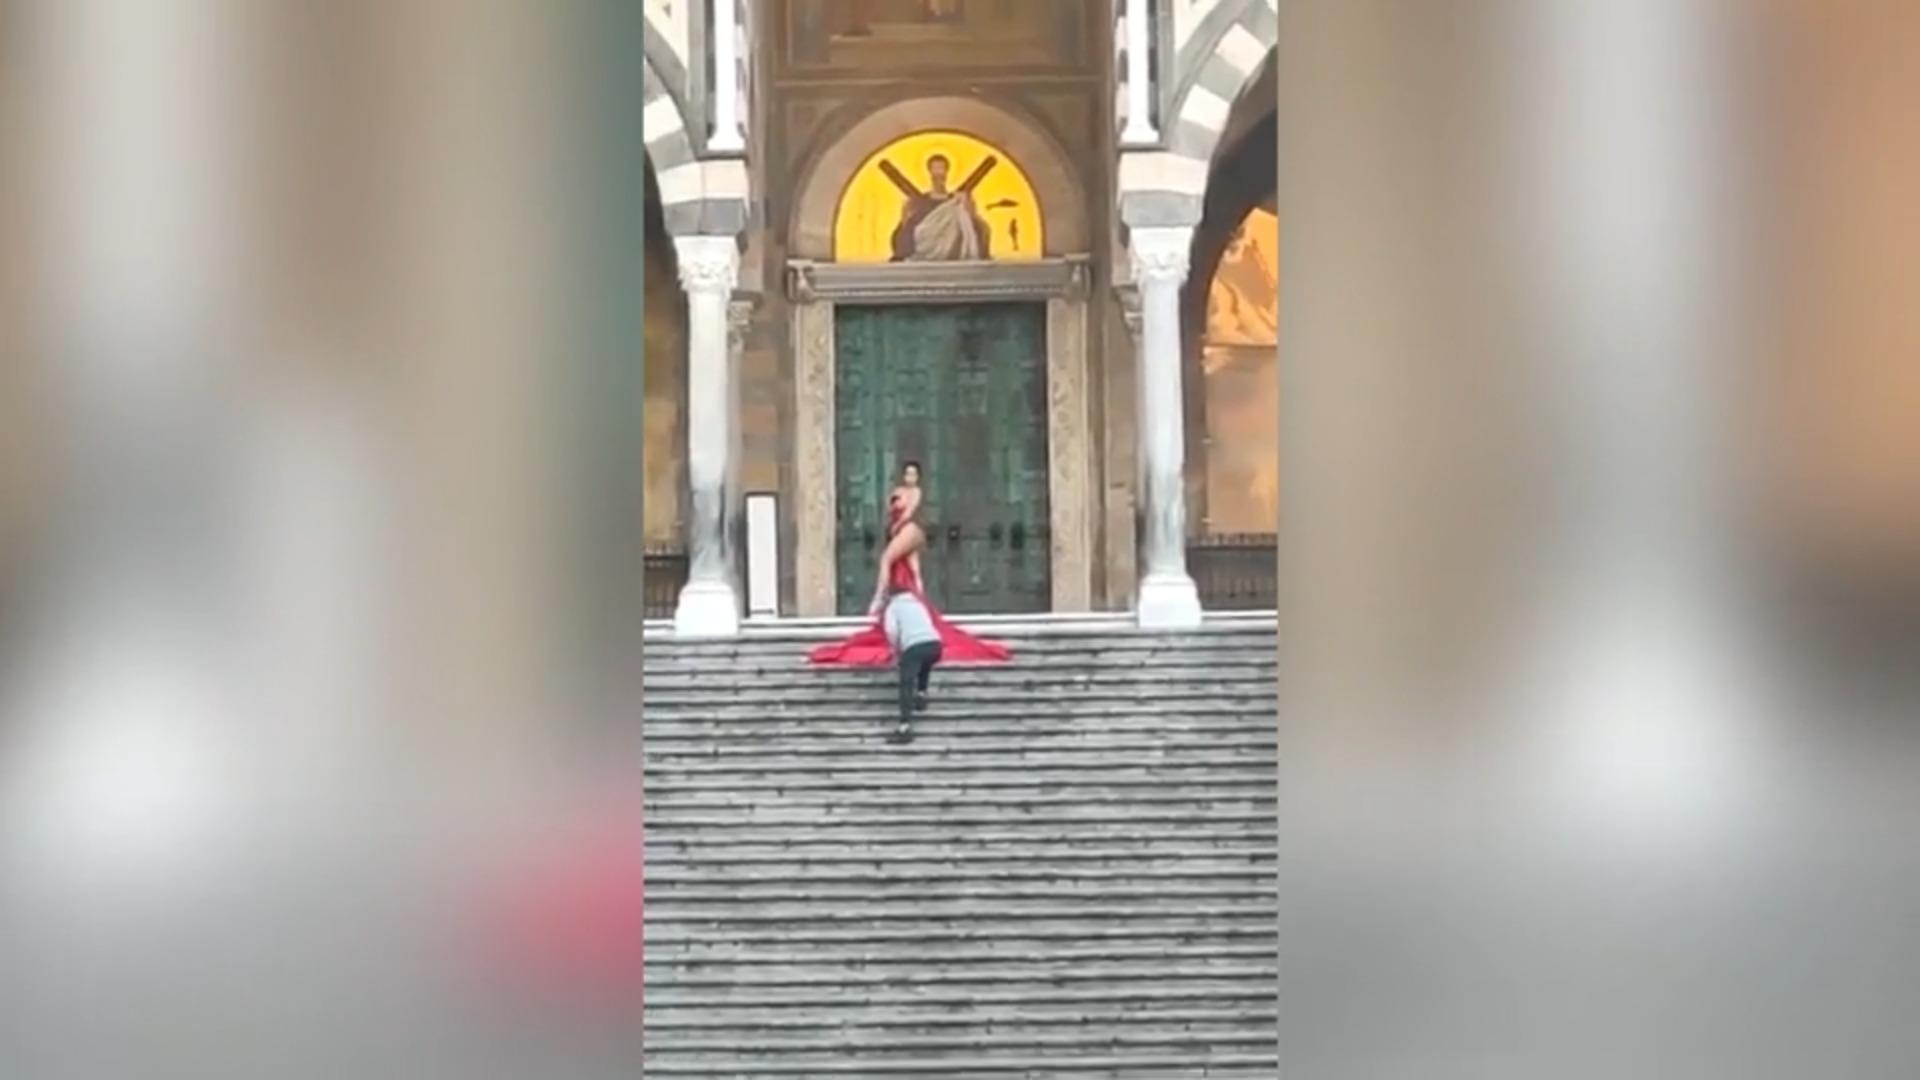 Touristin macht Nackt-Shooting vor berühmter Kathedrale Festnahme in Italien!